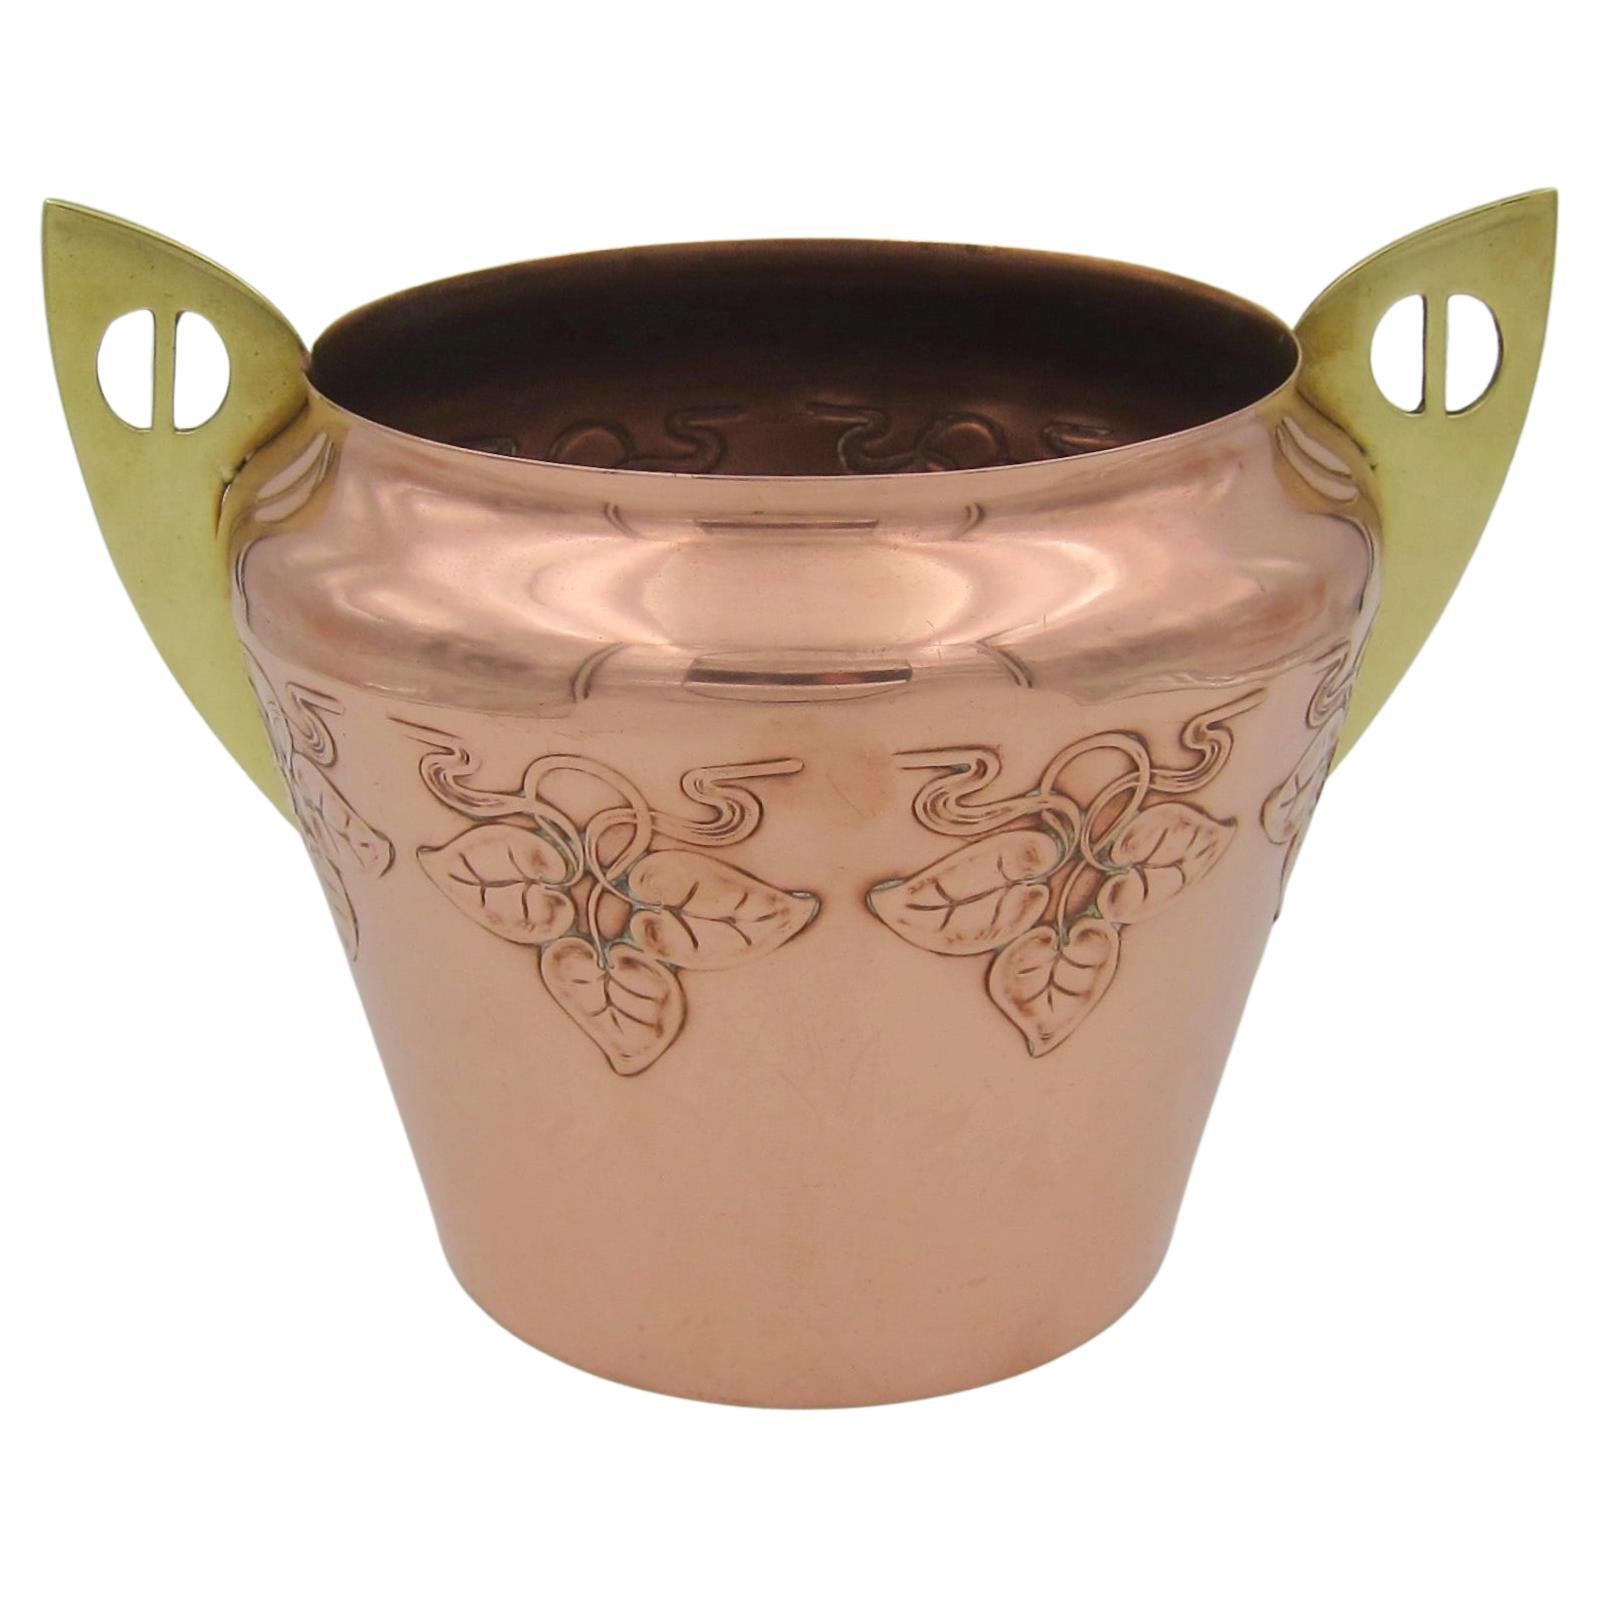 WMF Jugendstil Cachepot Flower Pot in Copper and Brass